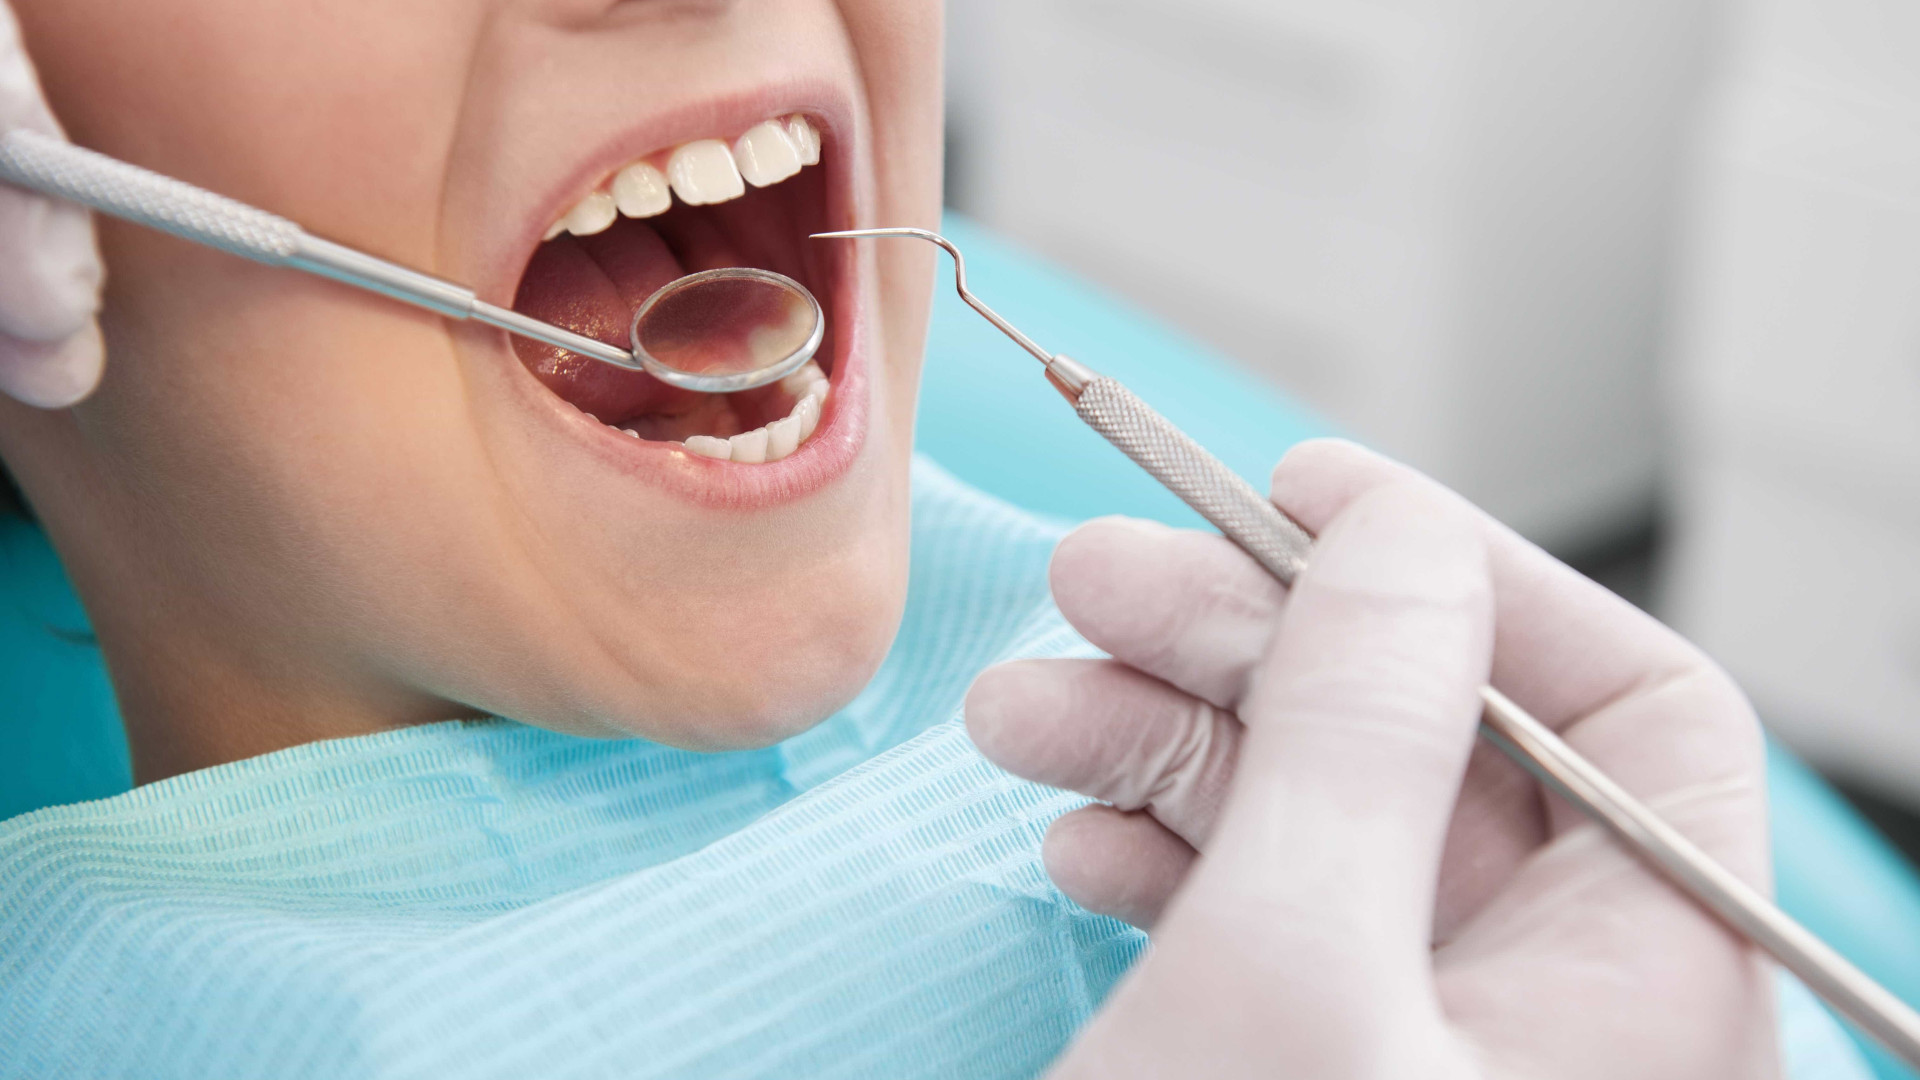 Restaurações dentárias escurecidas devem ser trocadas pelas brancas?